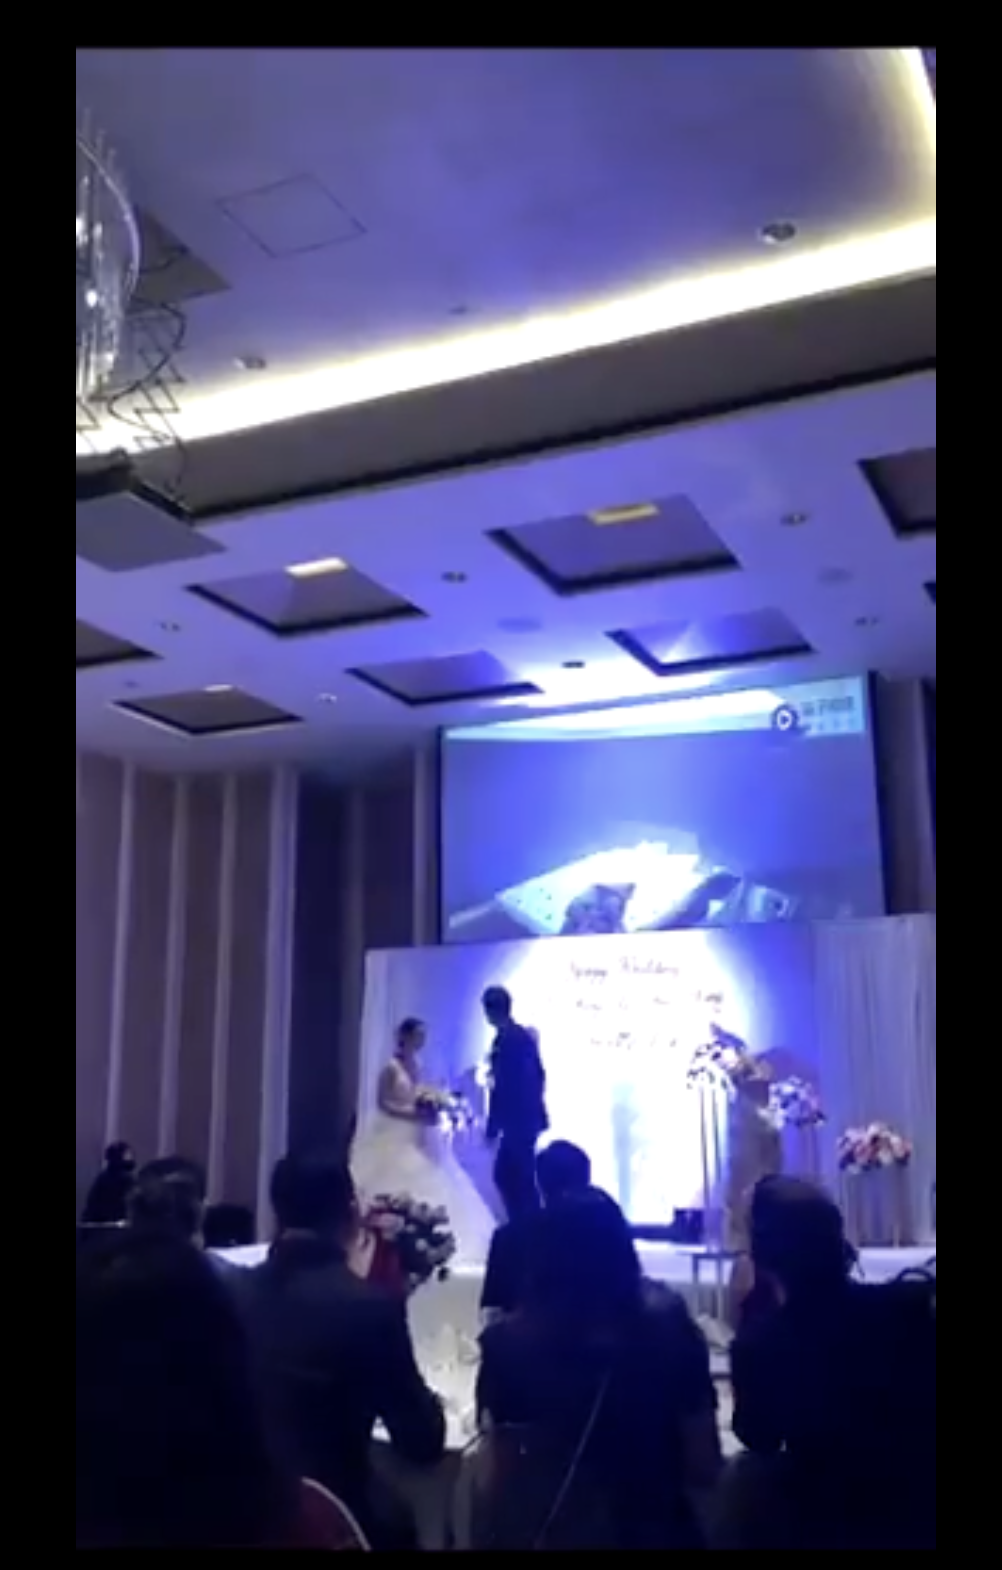 Die Braut und der Bräutigam wenden sich dem Projektor hinter ihnen zu | Quelle: twitter.com/TuanConCom1